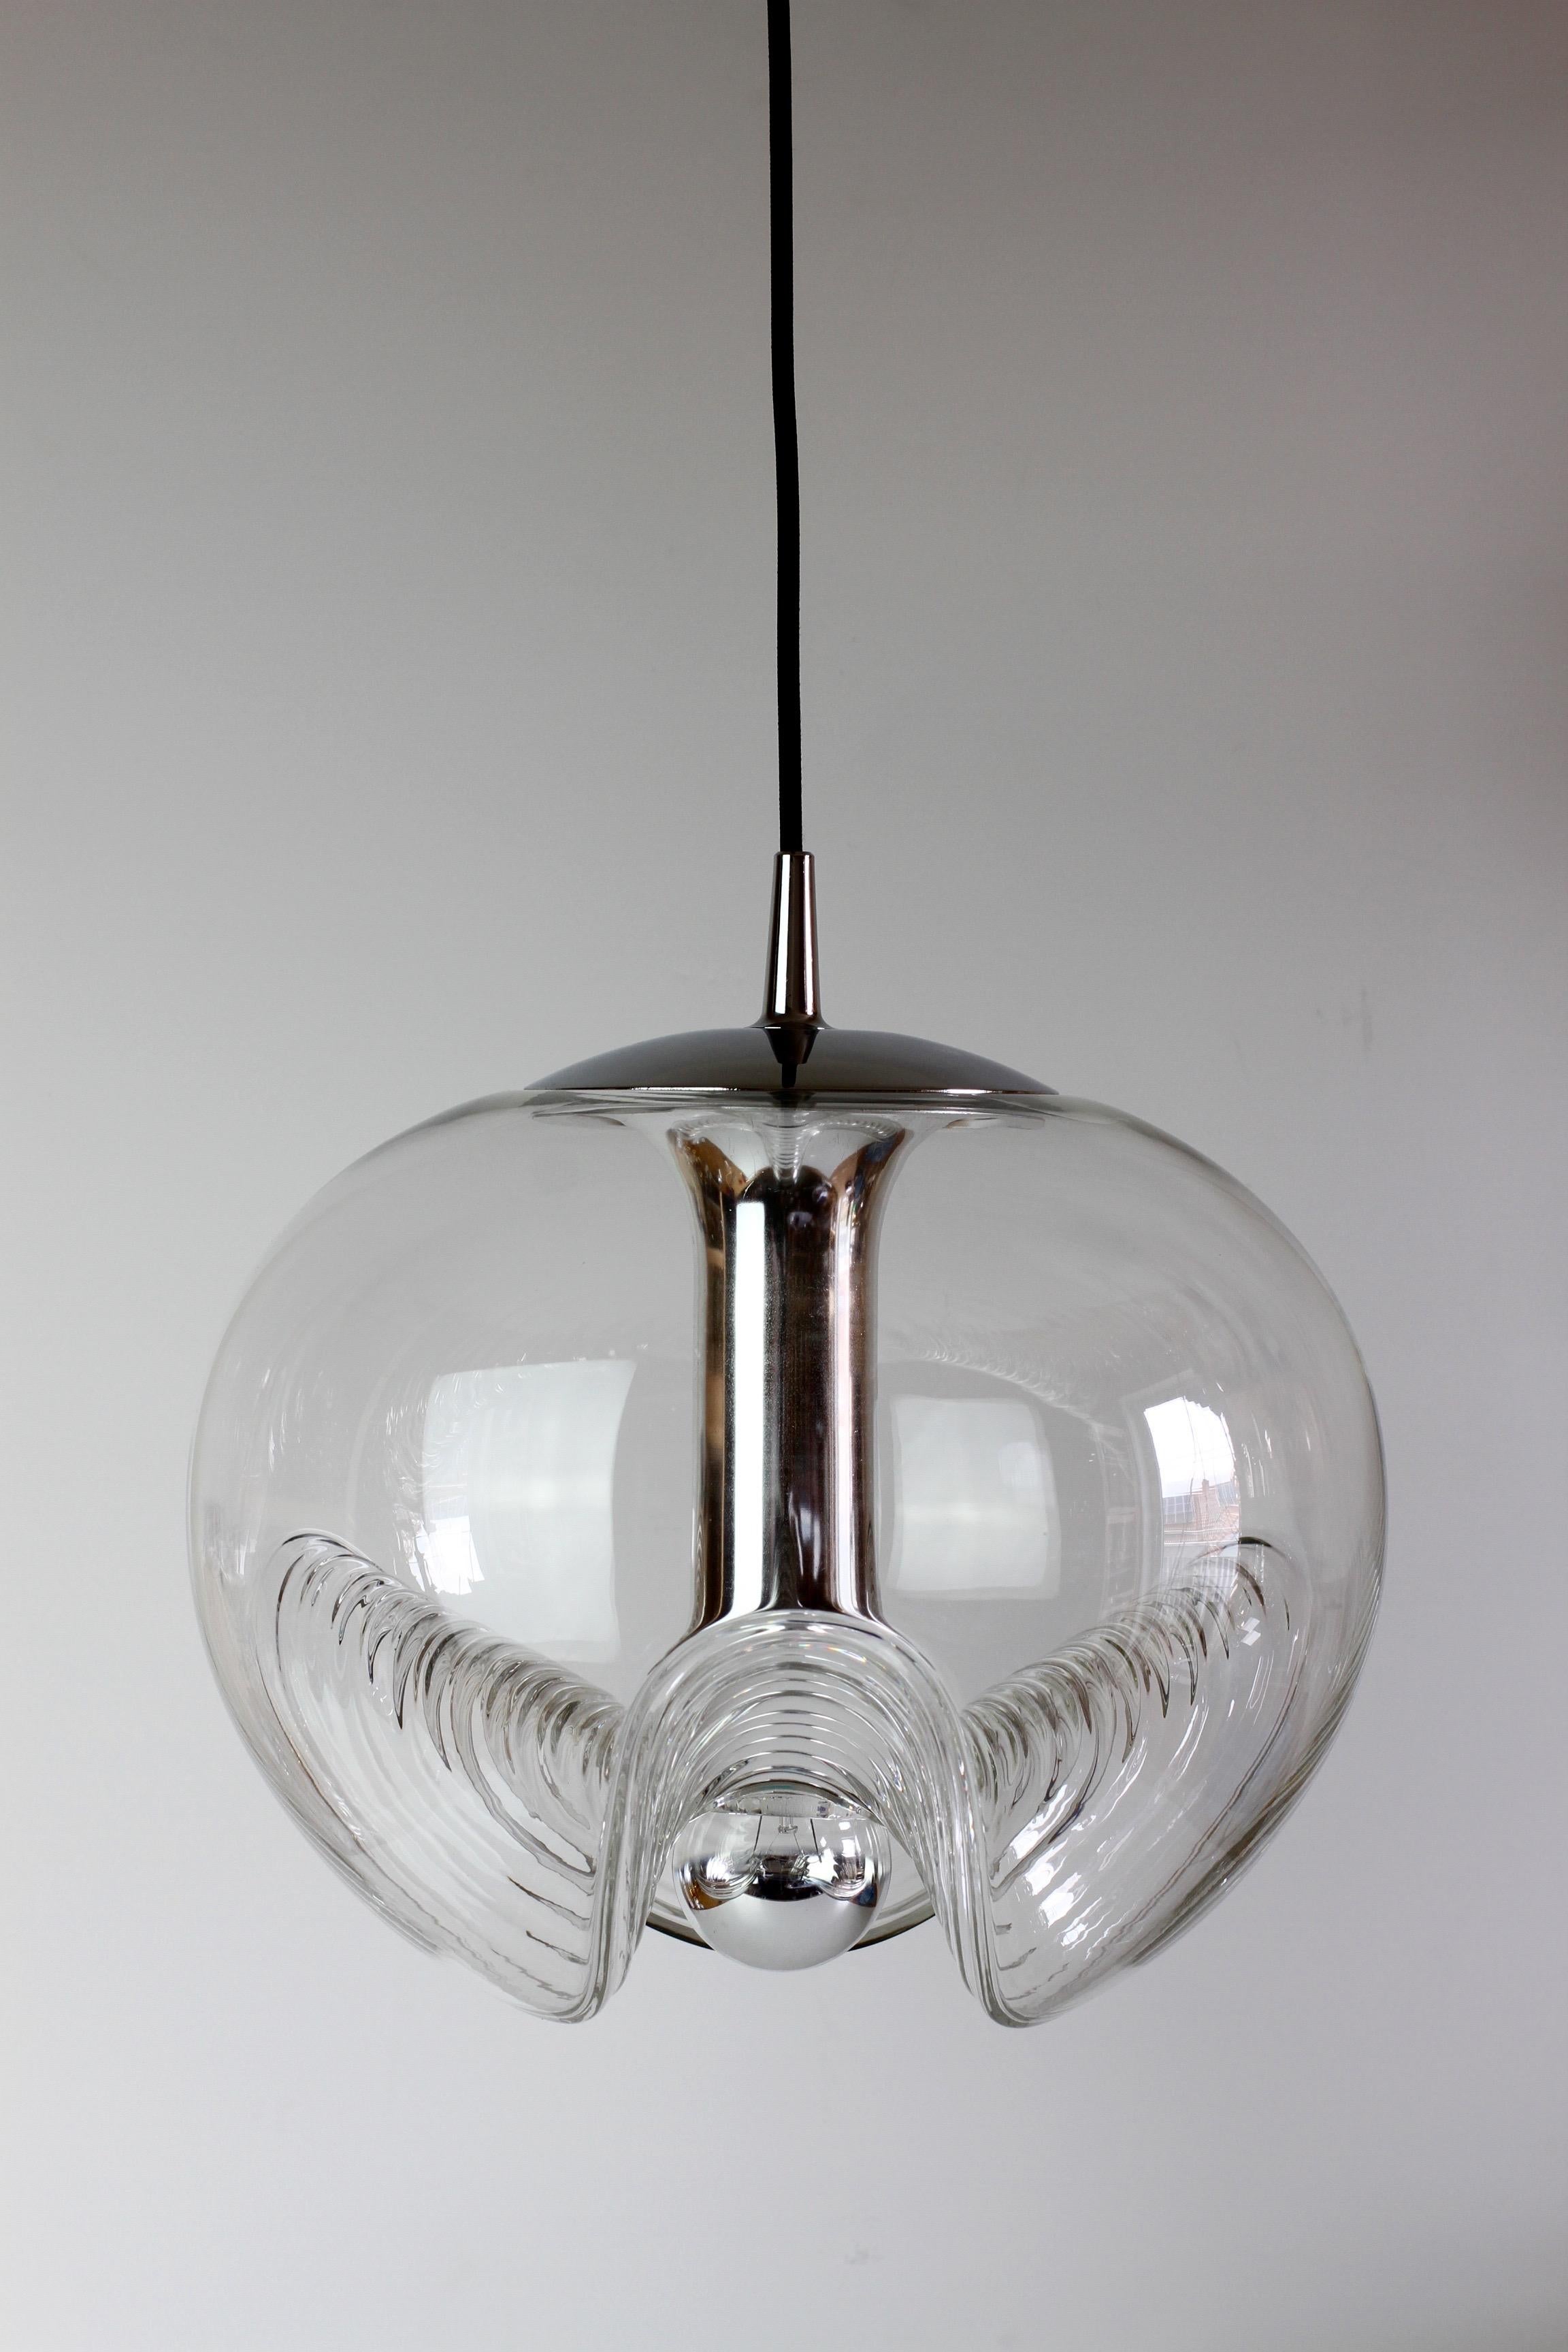 Wunderschönes Design aus der Mitte des Jahrhunderts von dem berühmten deutschen Leuchtenhersteller Peill & Putzler aus den 1970er Jahren. Ein absoluter Design-Klassiker mit einem Schirm aus Klarglas mit einer gewellten oder gerippten Blasenform, die